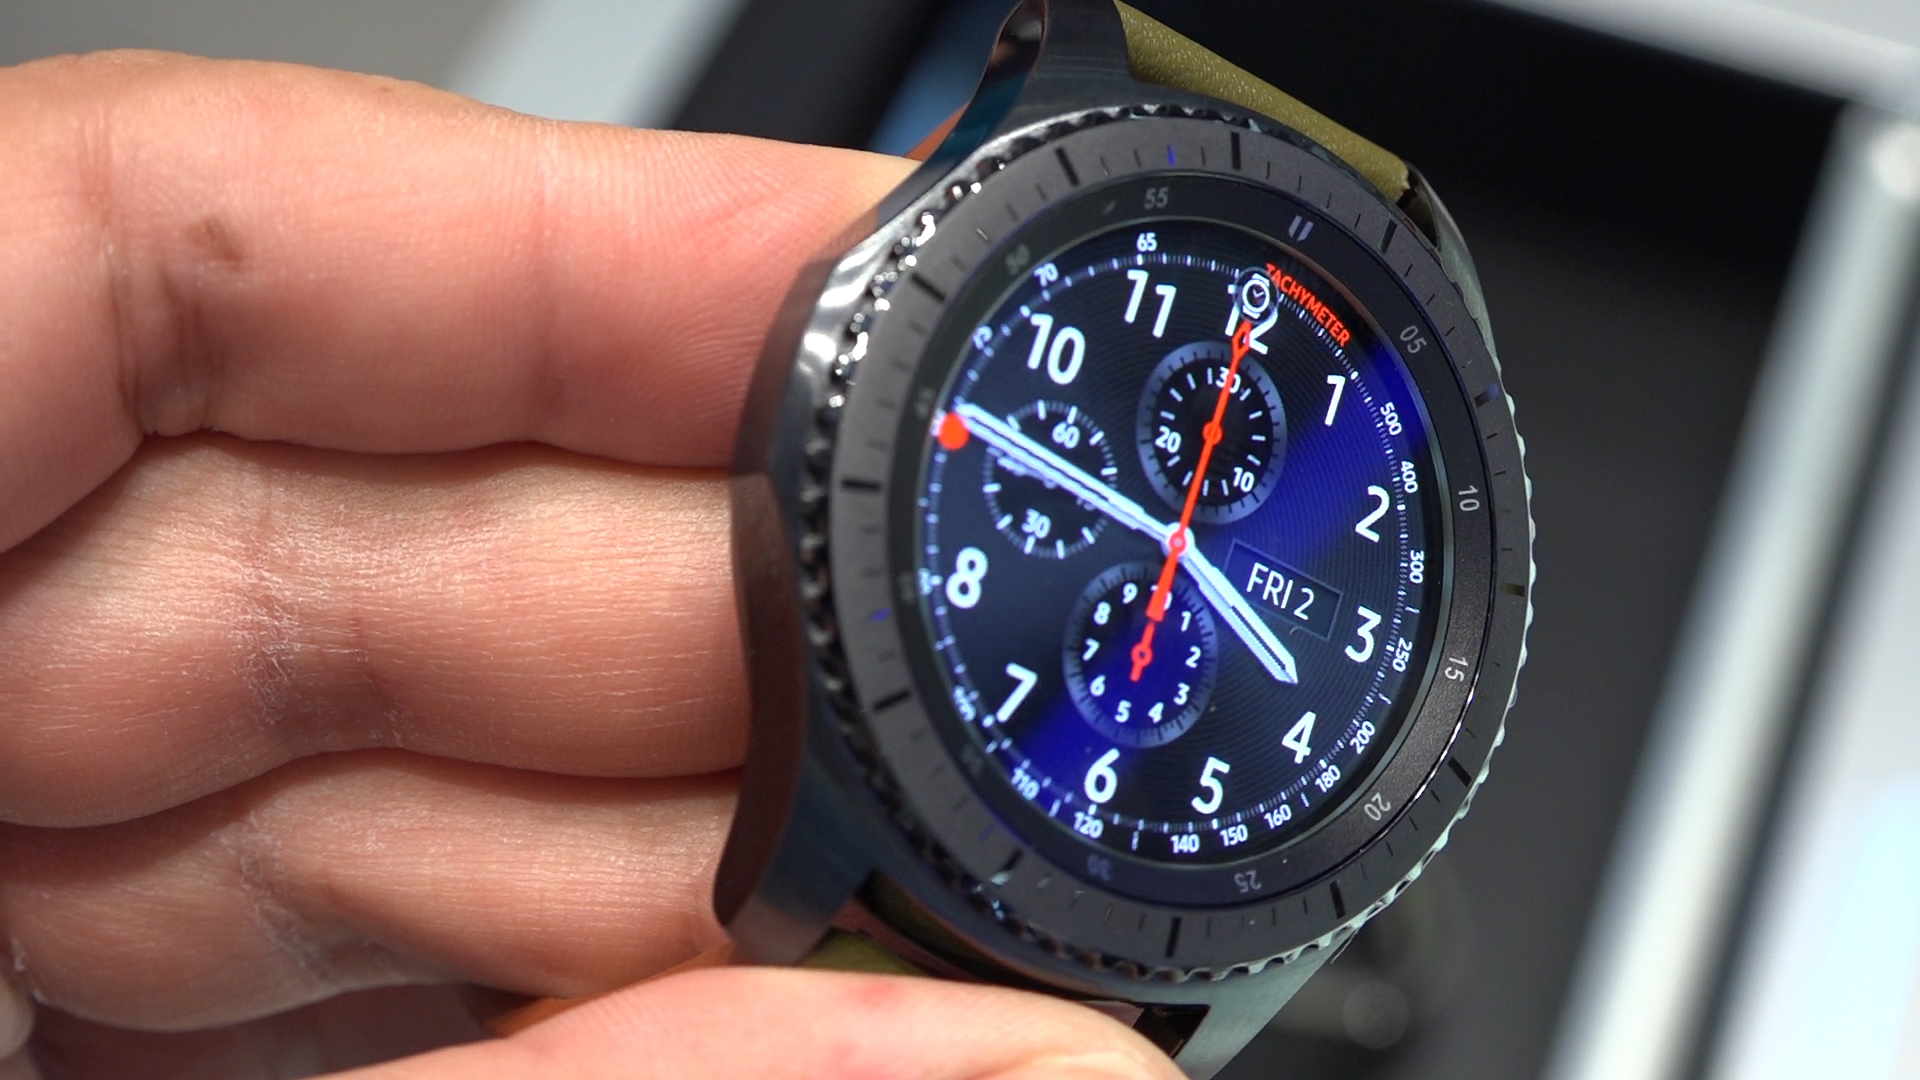 Özlemini çektiğimiz akıllı saat: Samsung Gear S3'ü kullandık 'Güzel ve işlevsel'